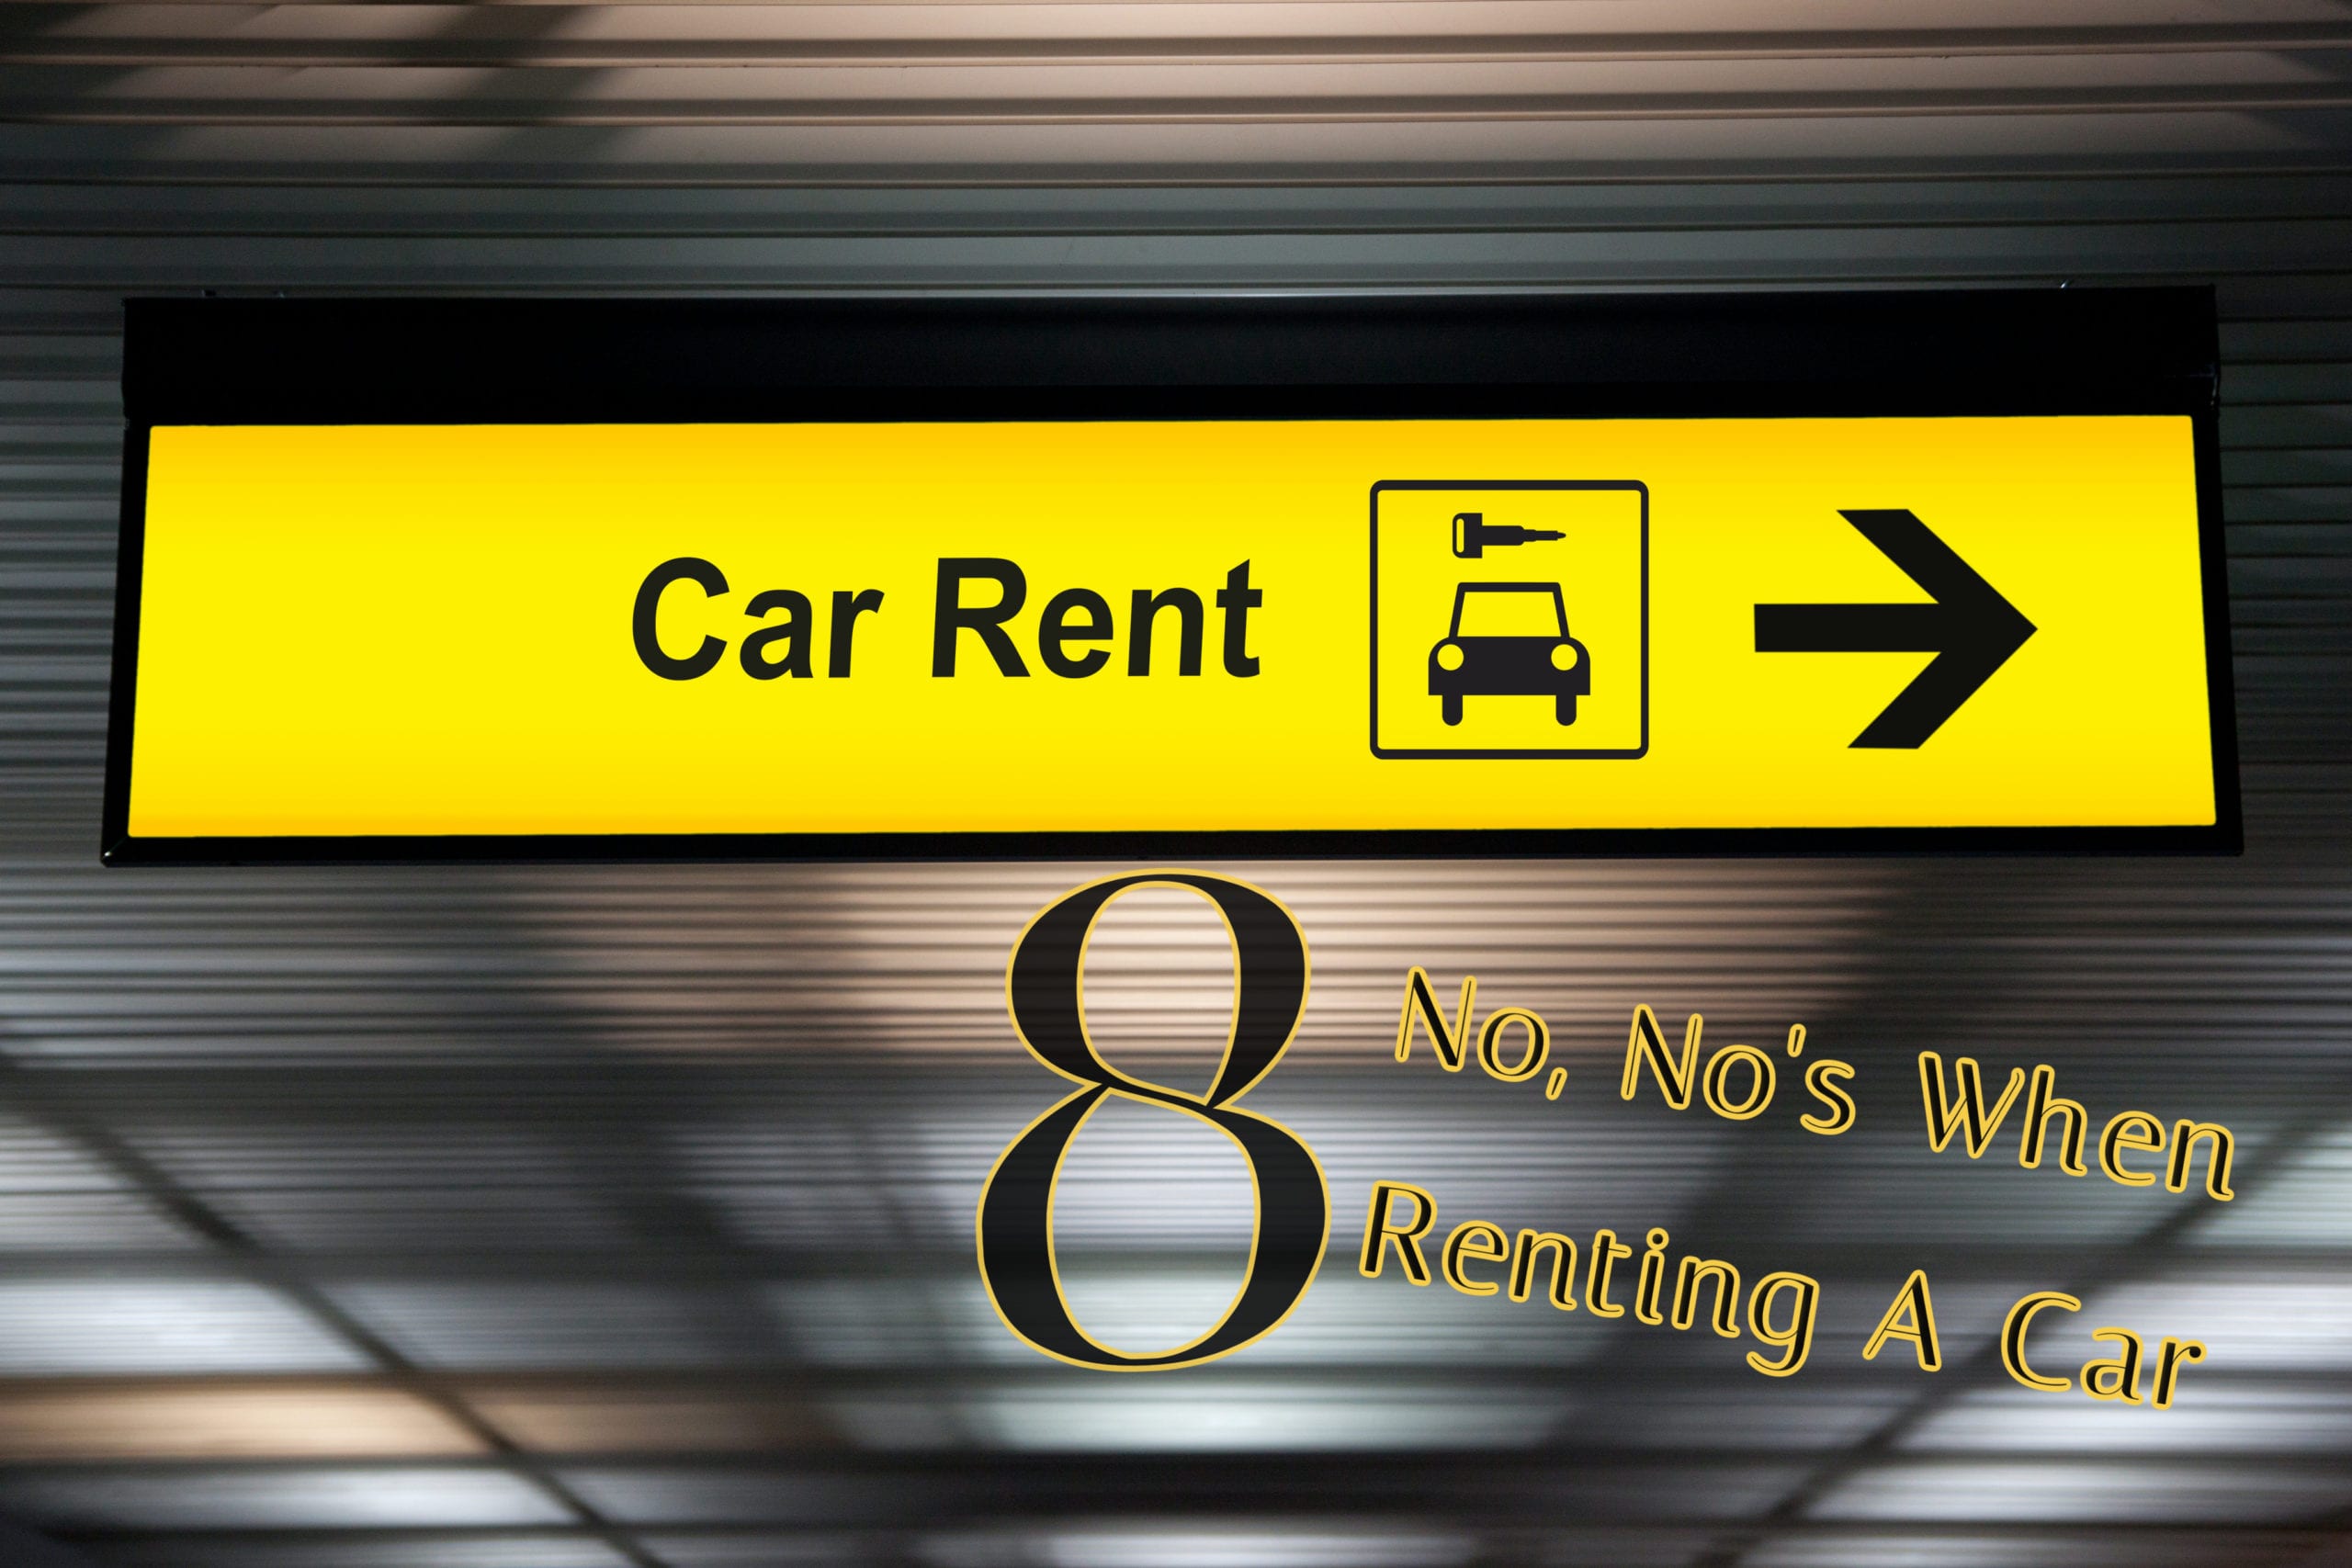 8 No, No’s When Renting A Car